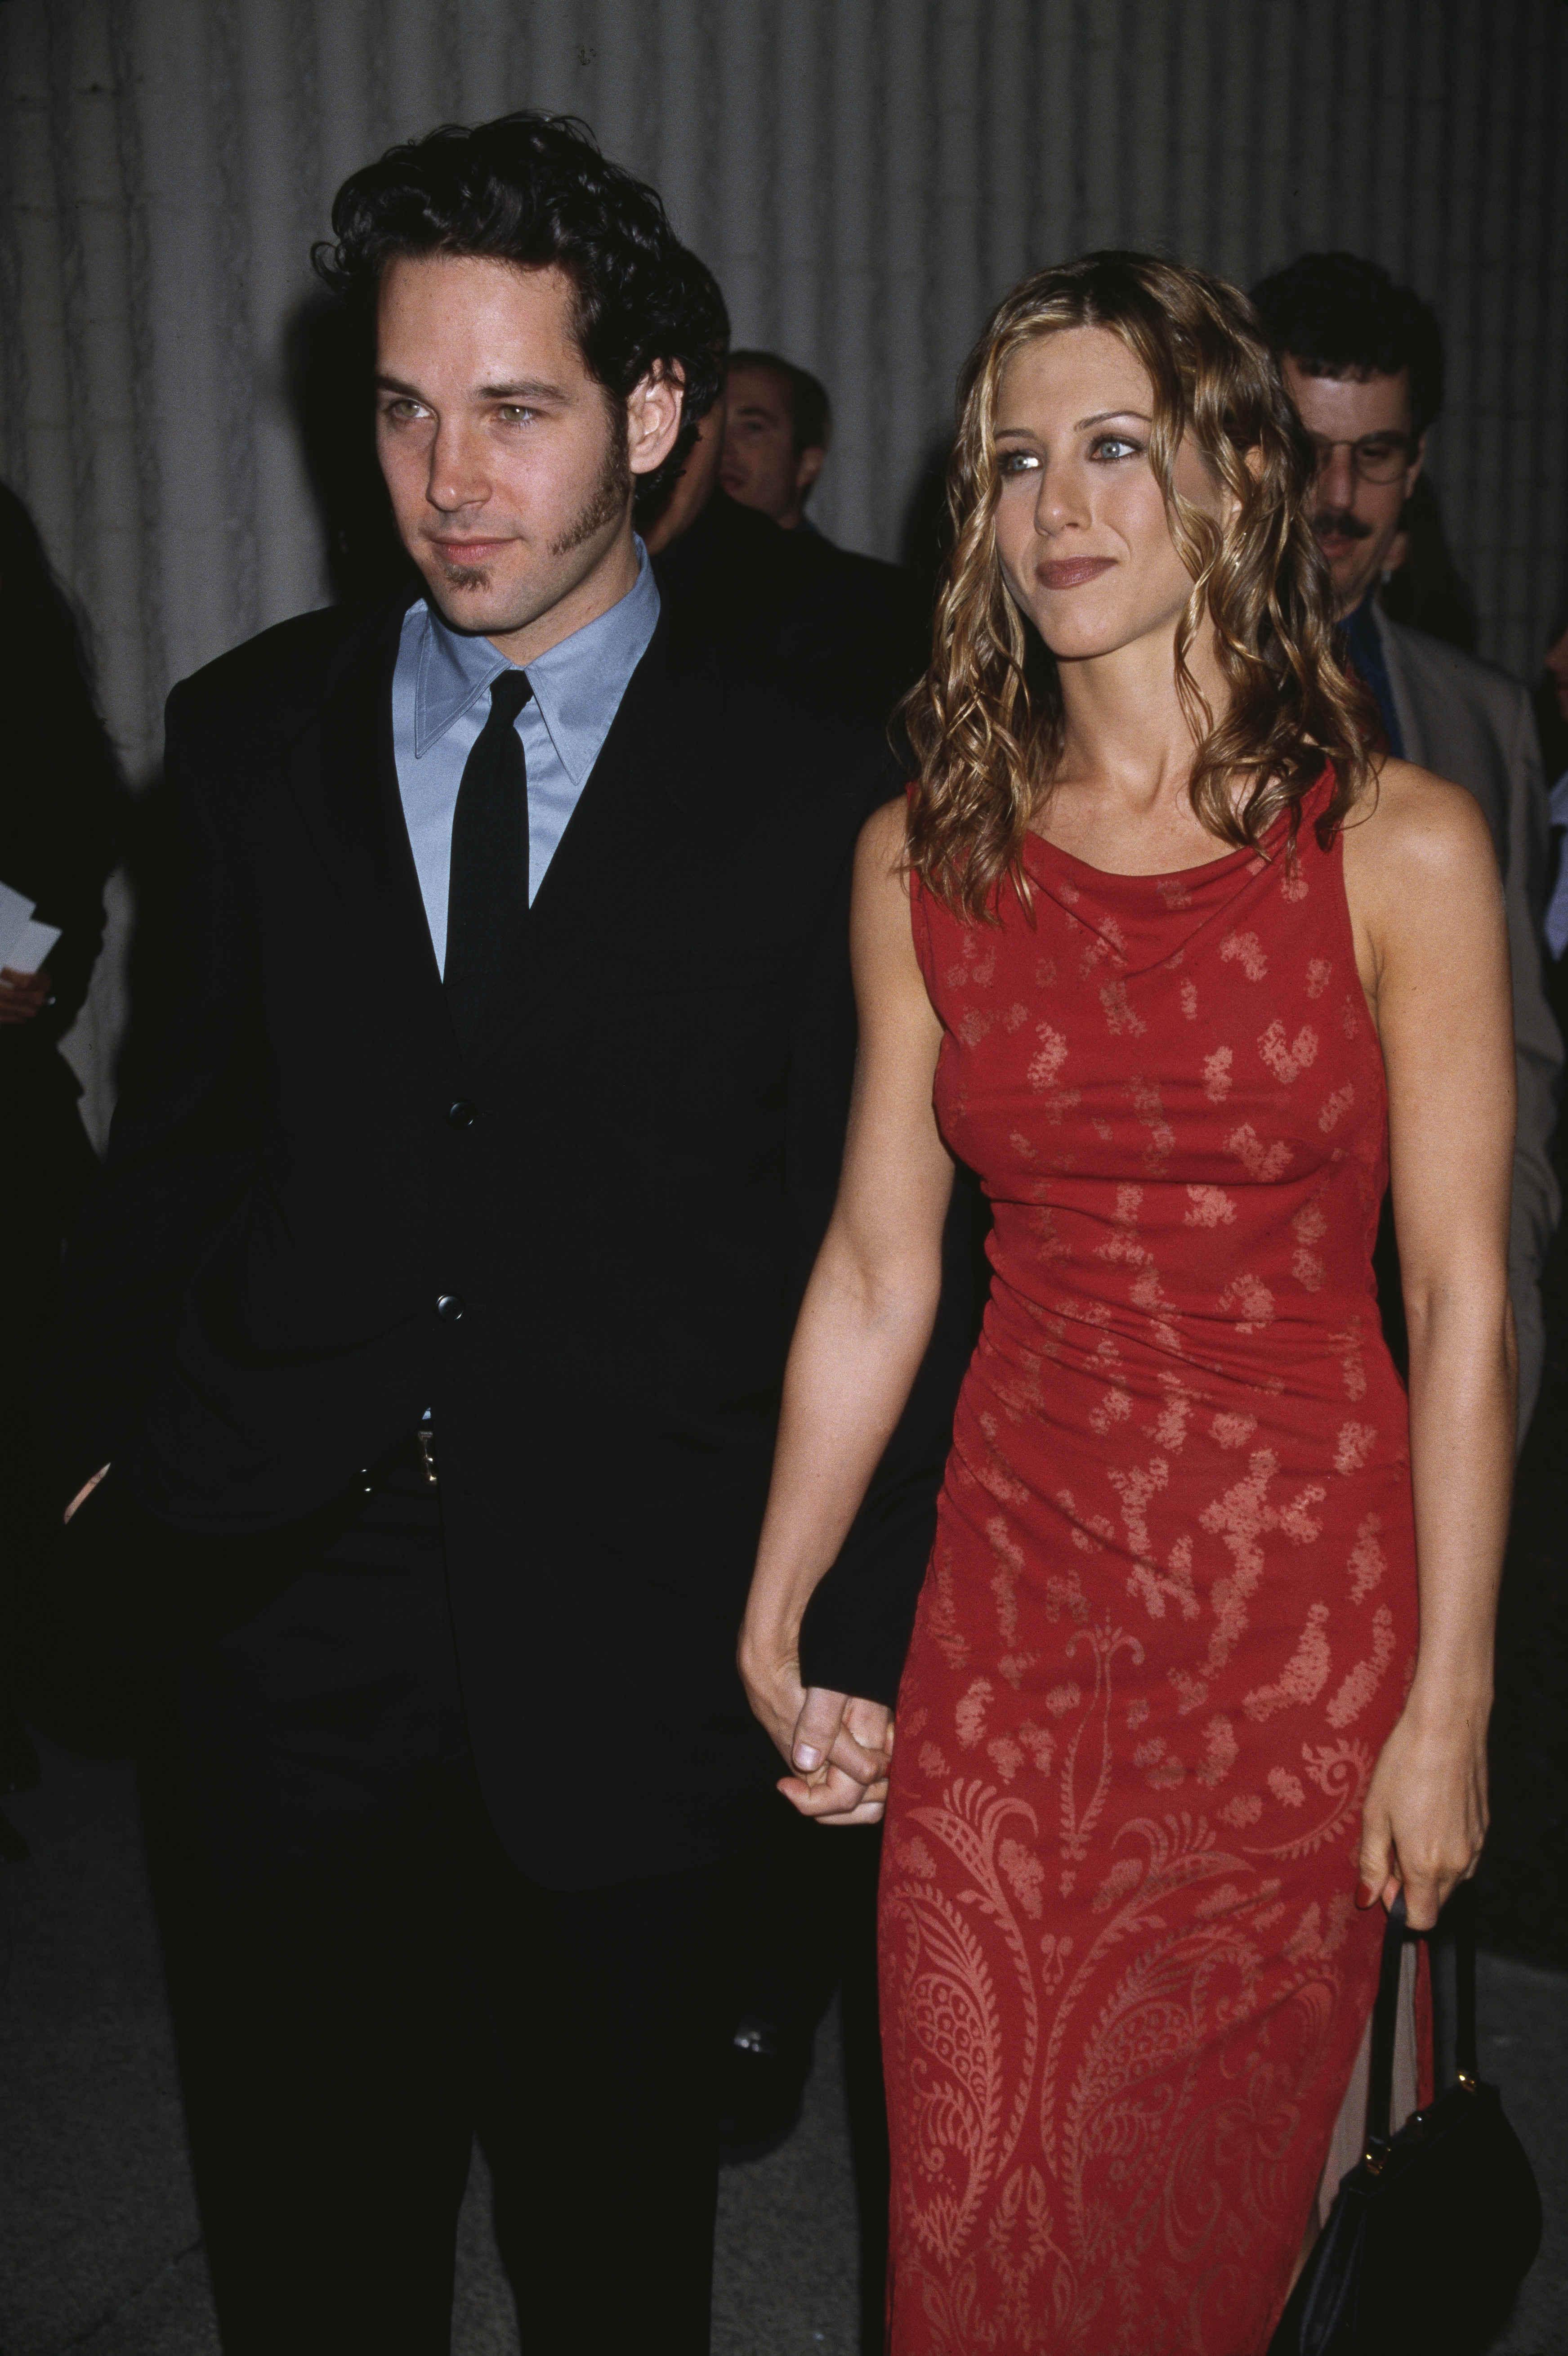 Jennifer Aniston und Paul Rudd bei der Premiere von "The Object of My Affection", 1998 | Quelle: Getty Images